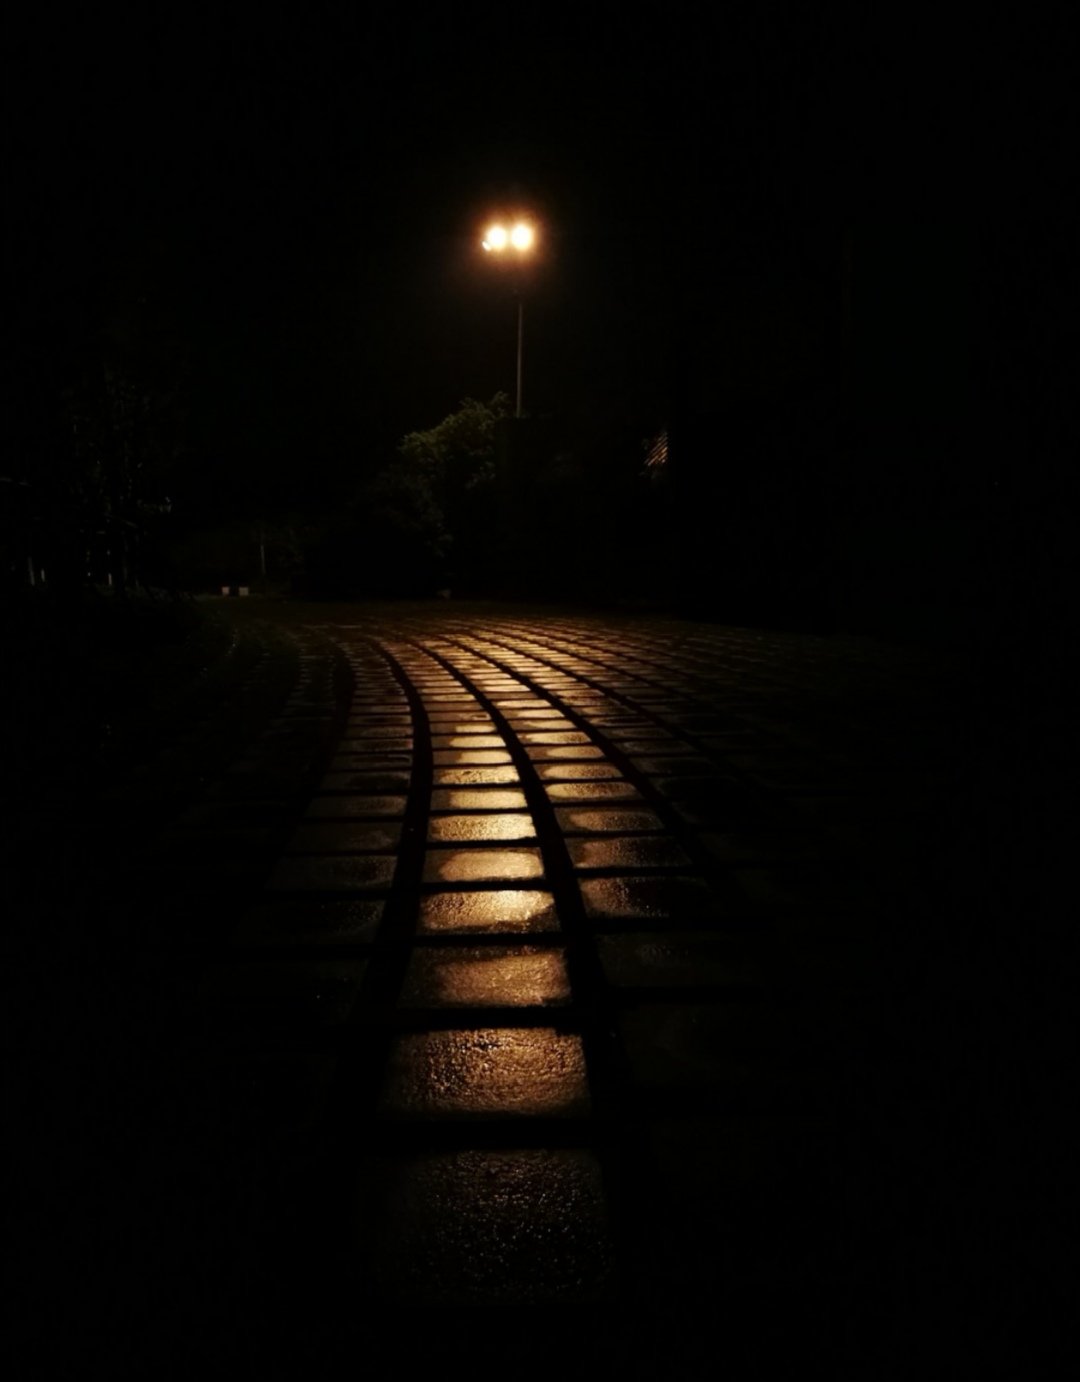 骑行时常骑夜路,一个人骑在黑夜里,并不觉得恐惧,只是